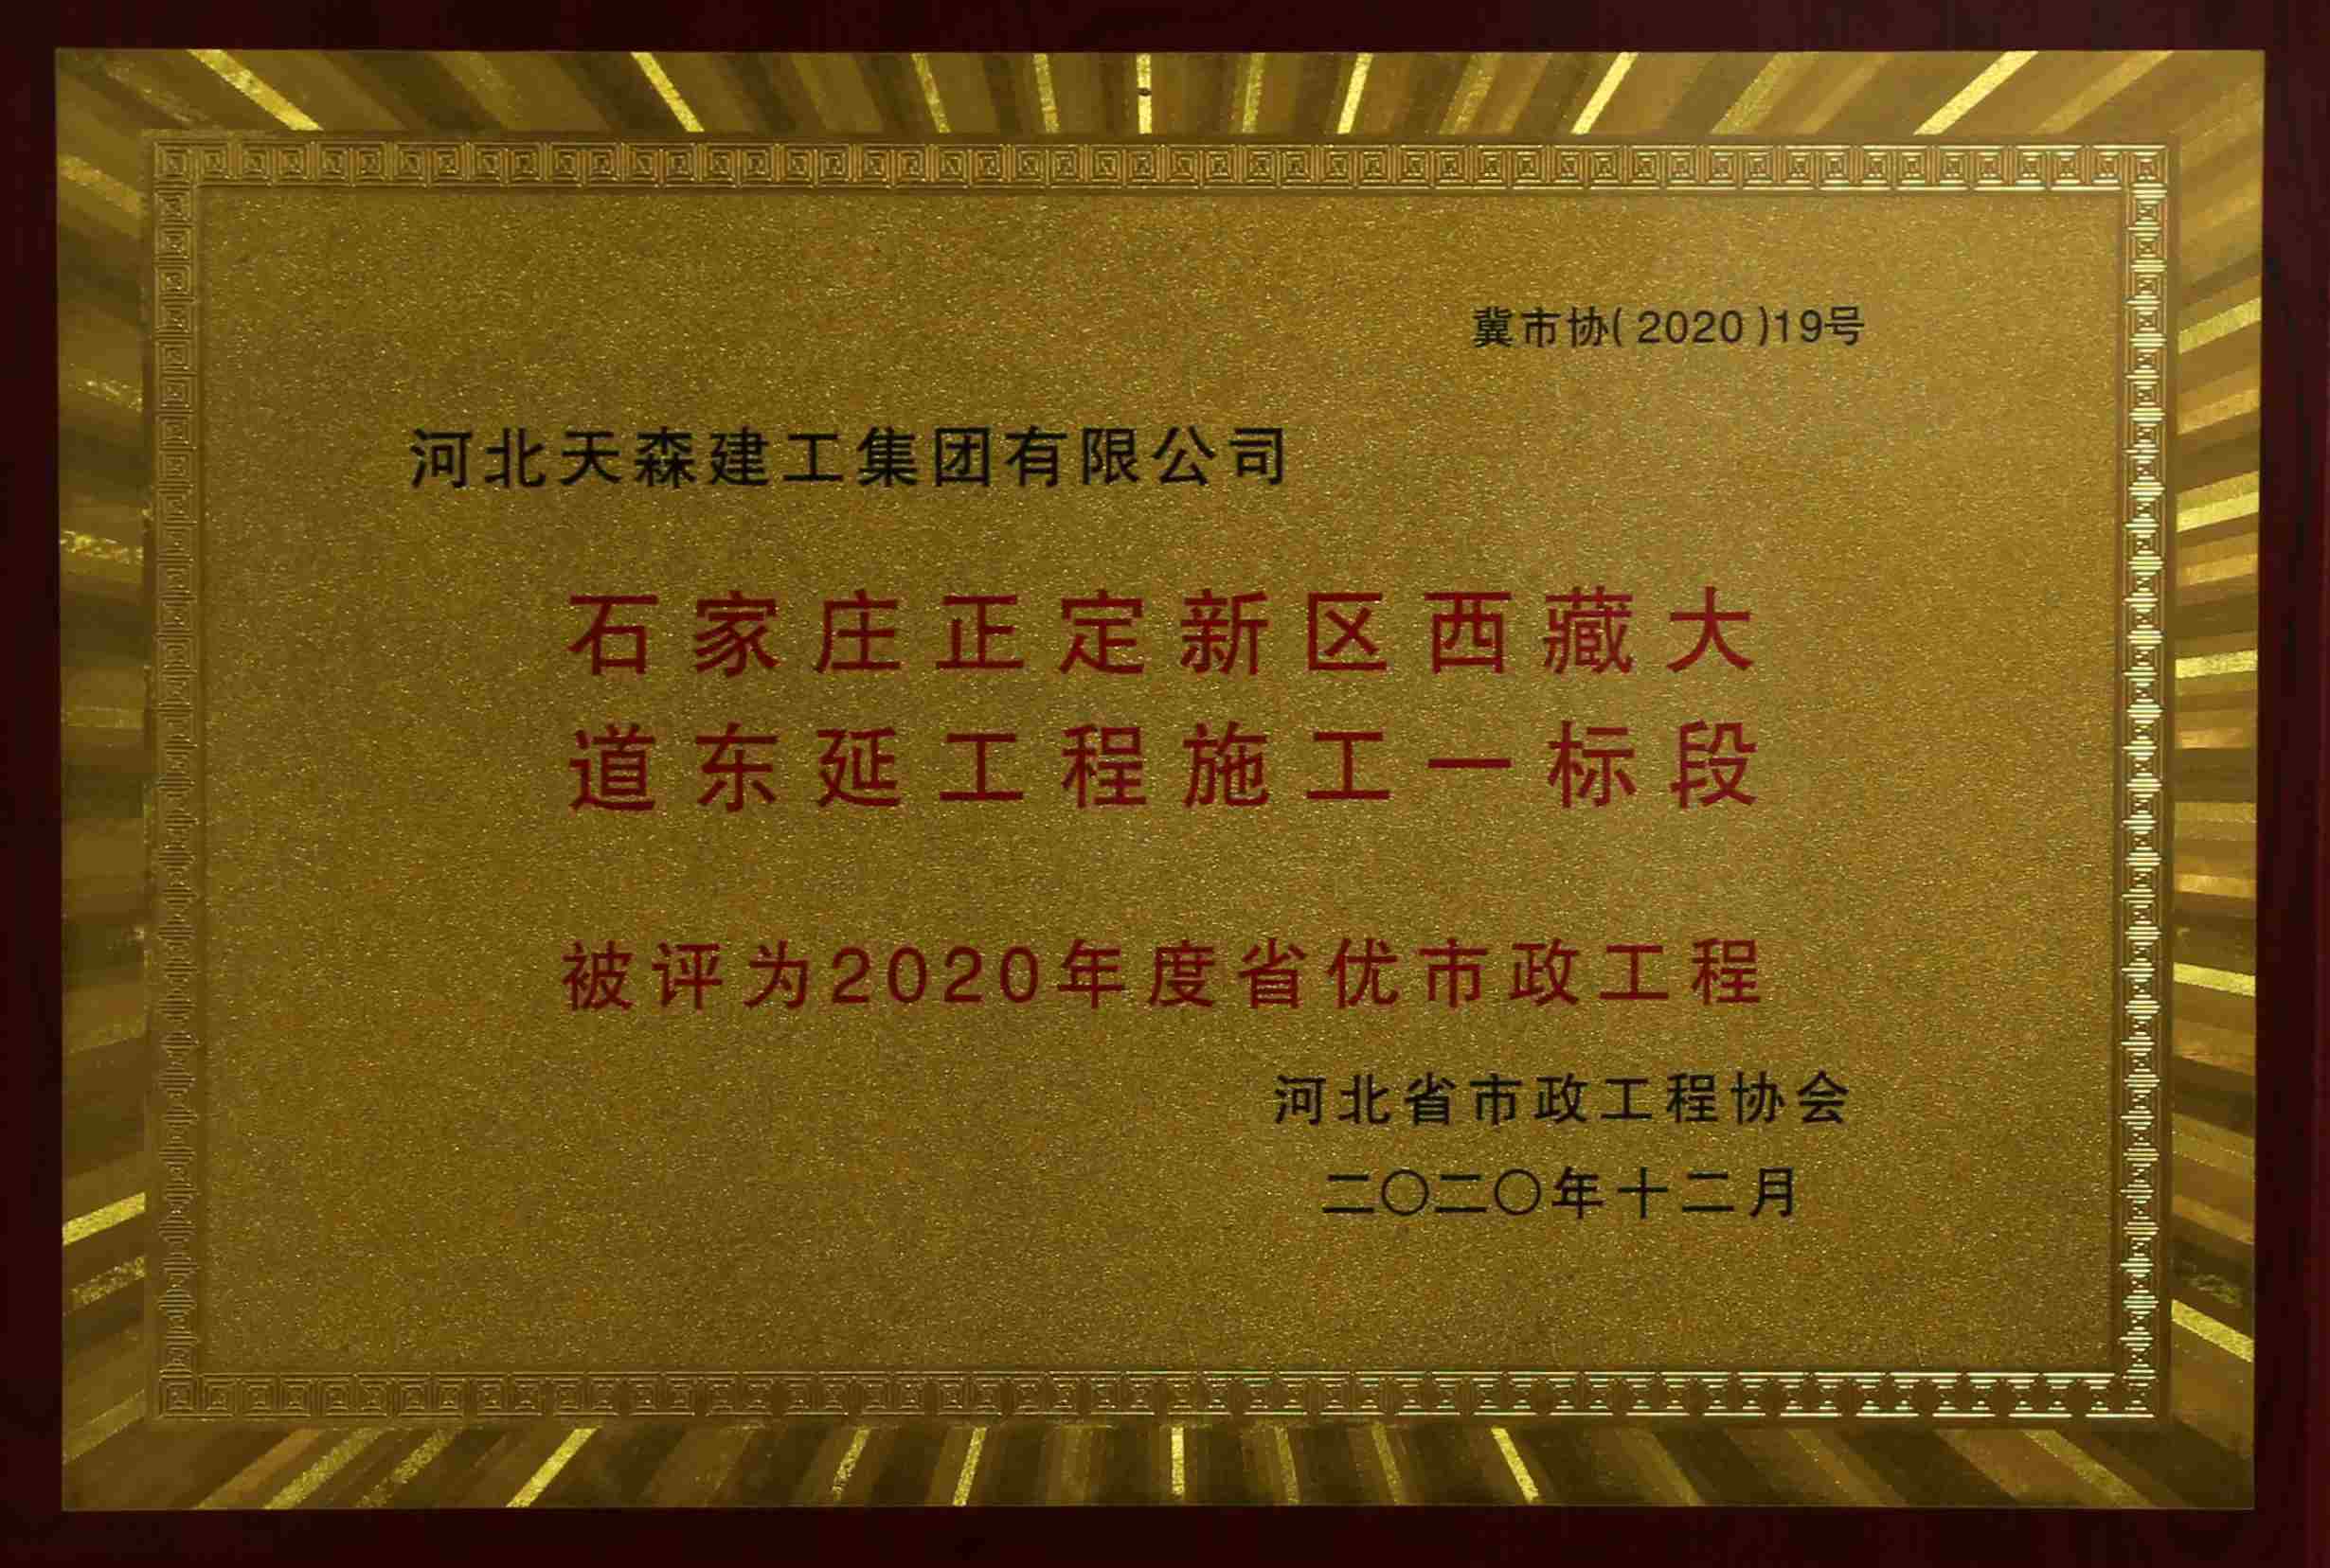 2020年度河北省優秀市政工程 石家莊正定新區西藏大道東延工程施工一標段